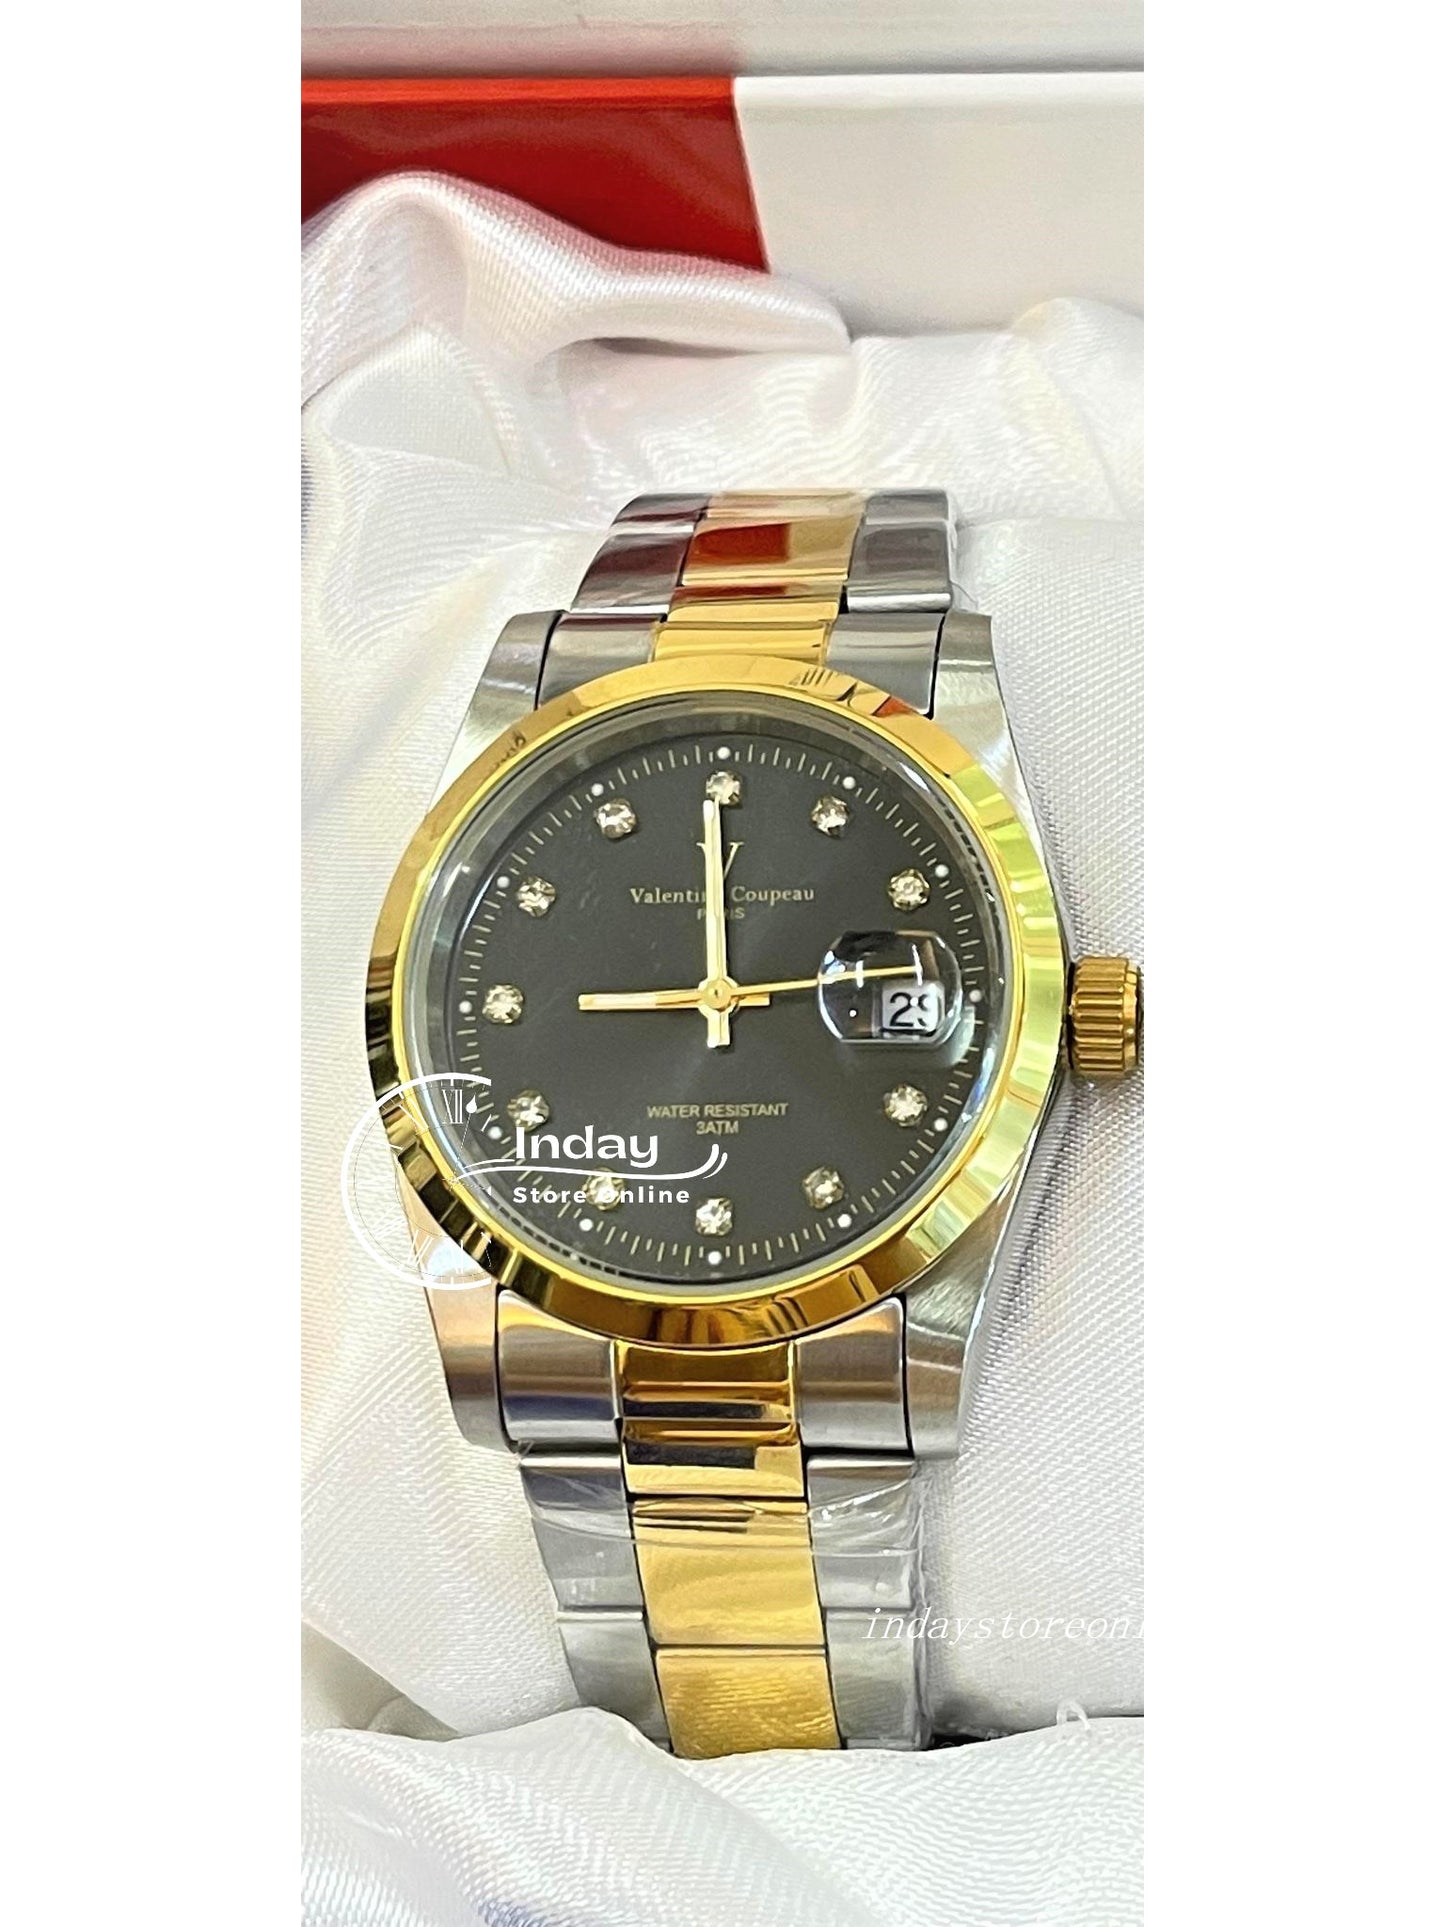 范倫鐵諾 古柏 Valentino Coupeau Men's Watch 12168TM-18